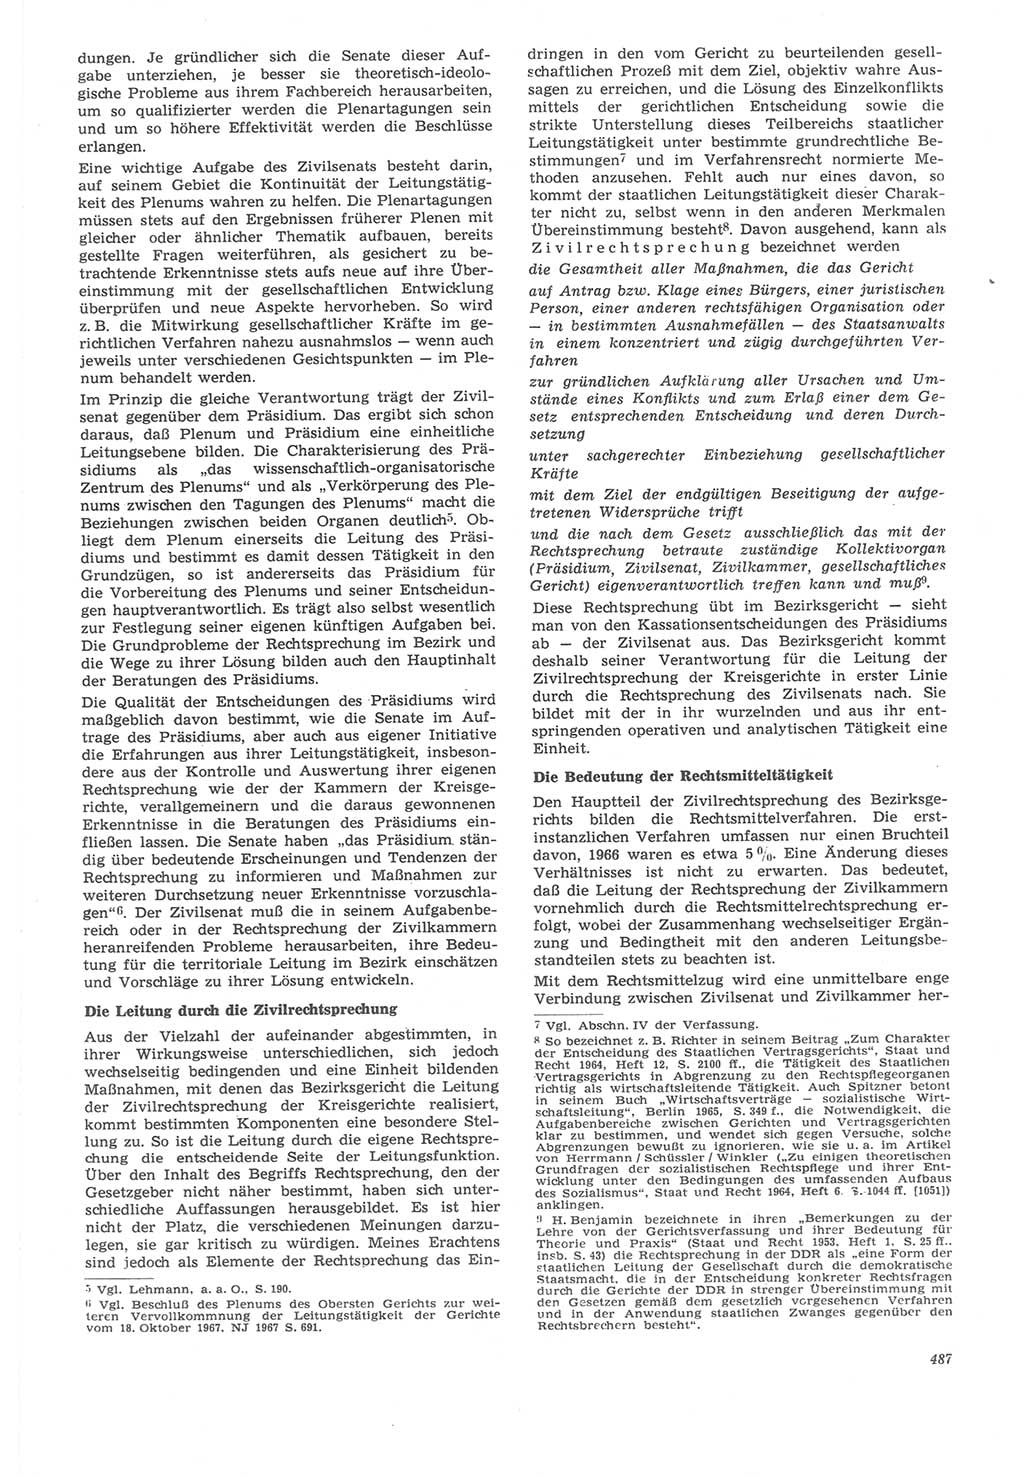 Neue Justiz (NJ), Zeitschrift für Recht und Rechtswissenschaft [Deutsche Demokratische Republik (DDR)], 22. Jahrgang 1968, Seite 487 (NJ DDR 1968, S. 487)